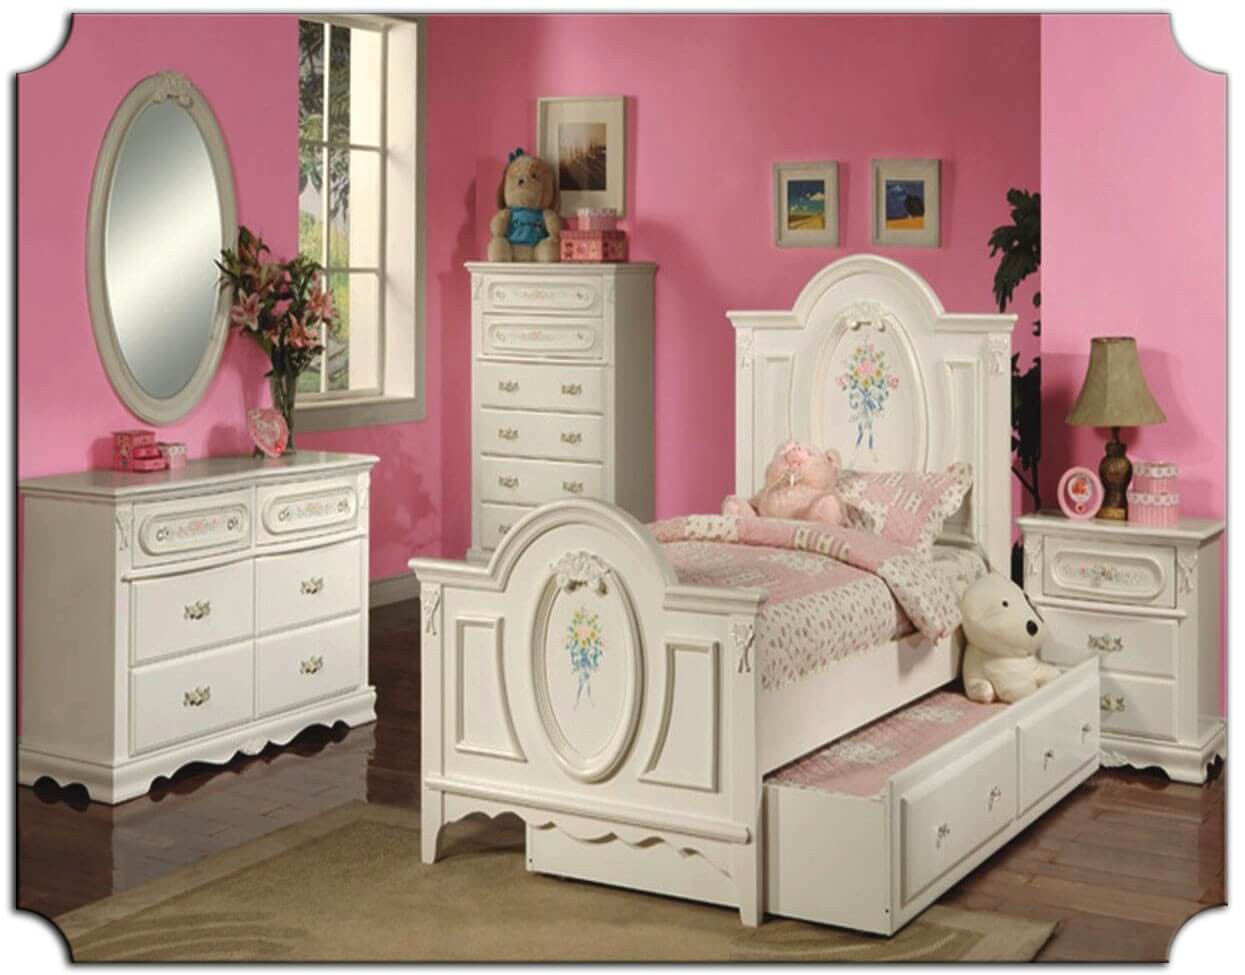 Kids Bedroom Dresser
 The Best Kids Bedroom Furniture Sets Best Interior Decor